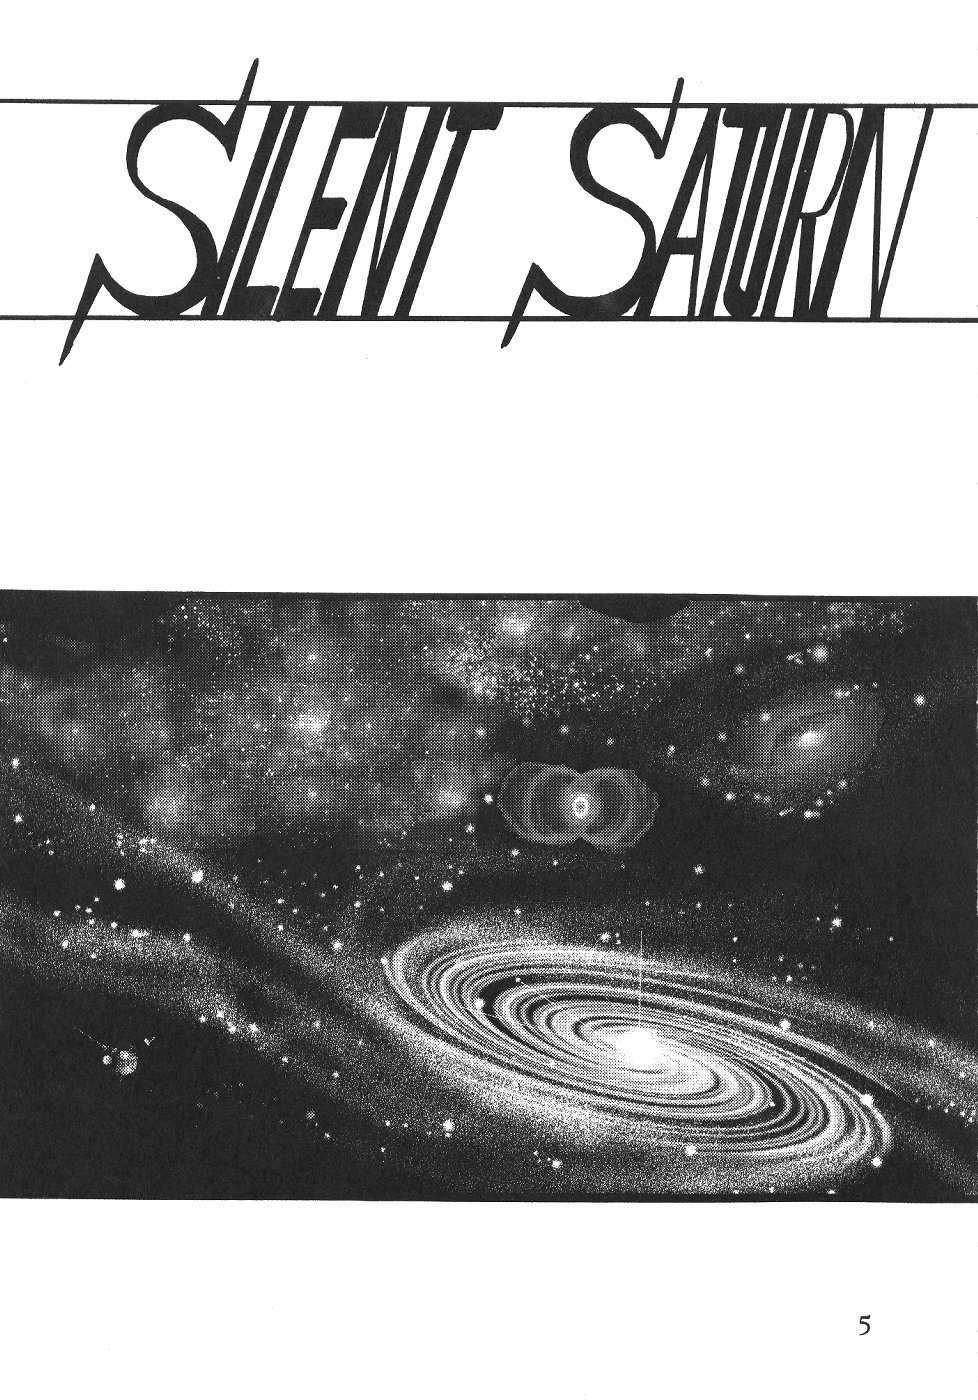 Saateiseibaazutoriito 2D Shooting - Silent Saturn 13 (Sailor Moon) 